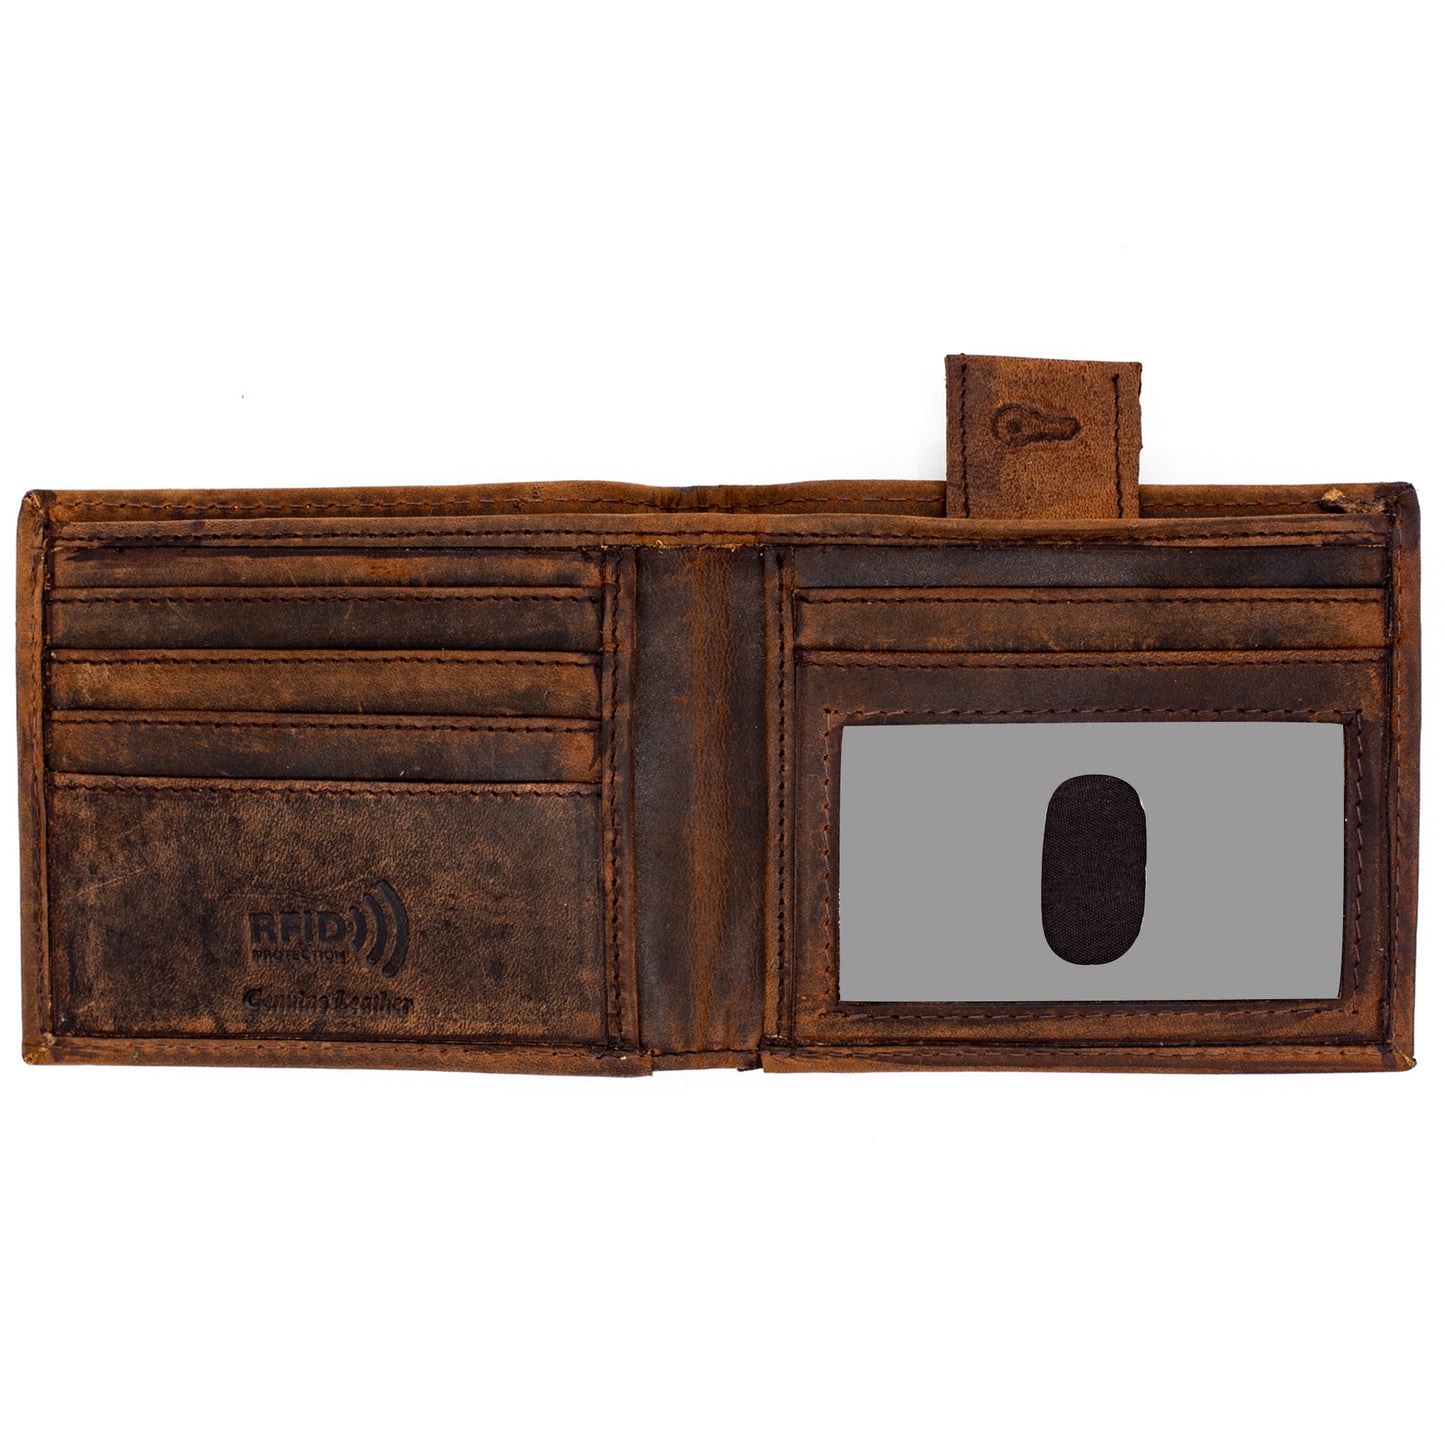 RFID Safe Genuine Leather Bifold Wallet Men Model : J520 HO